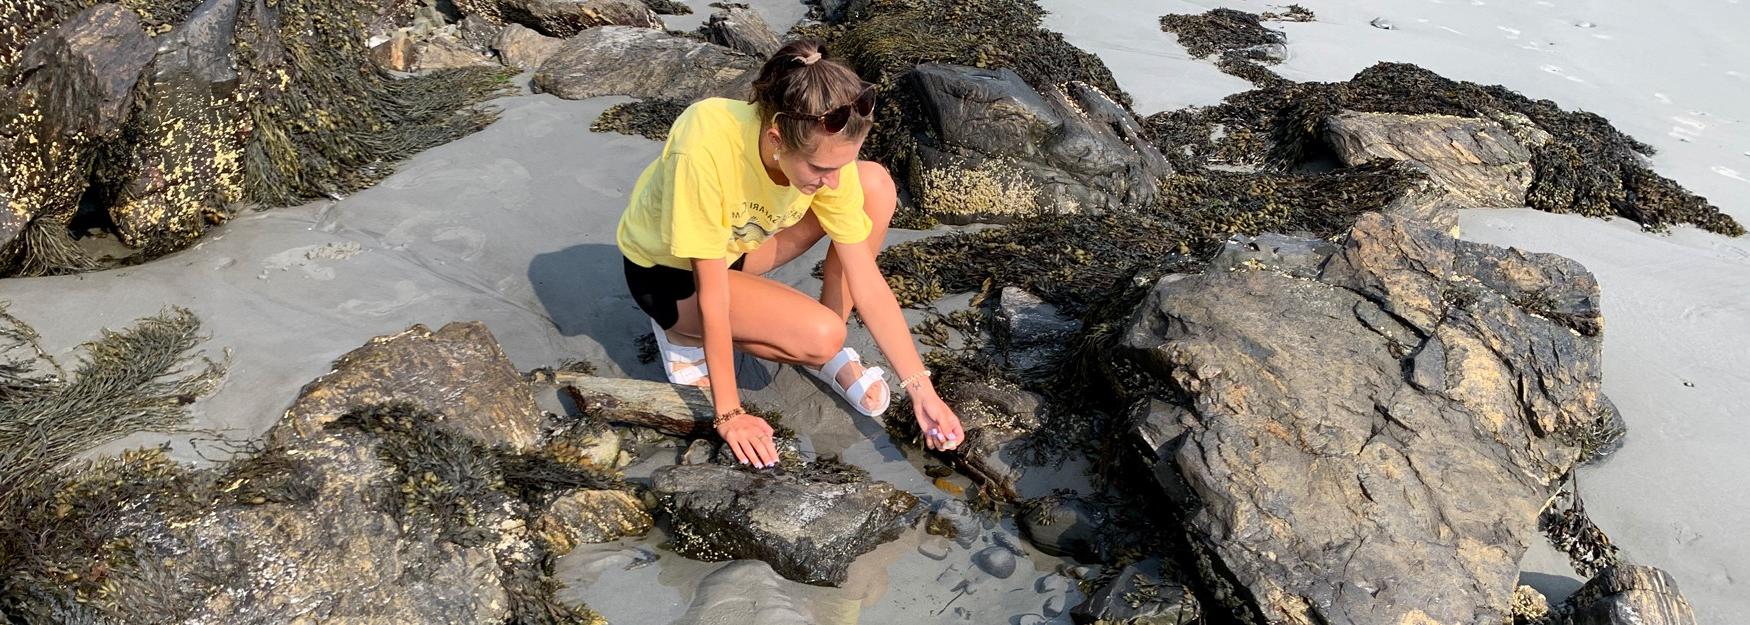 英国东北大学海洋科学专业的学生埃琳娜·希普利正在探索一个潮汐池